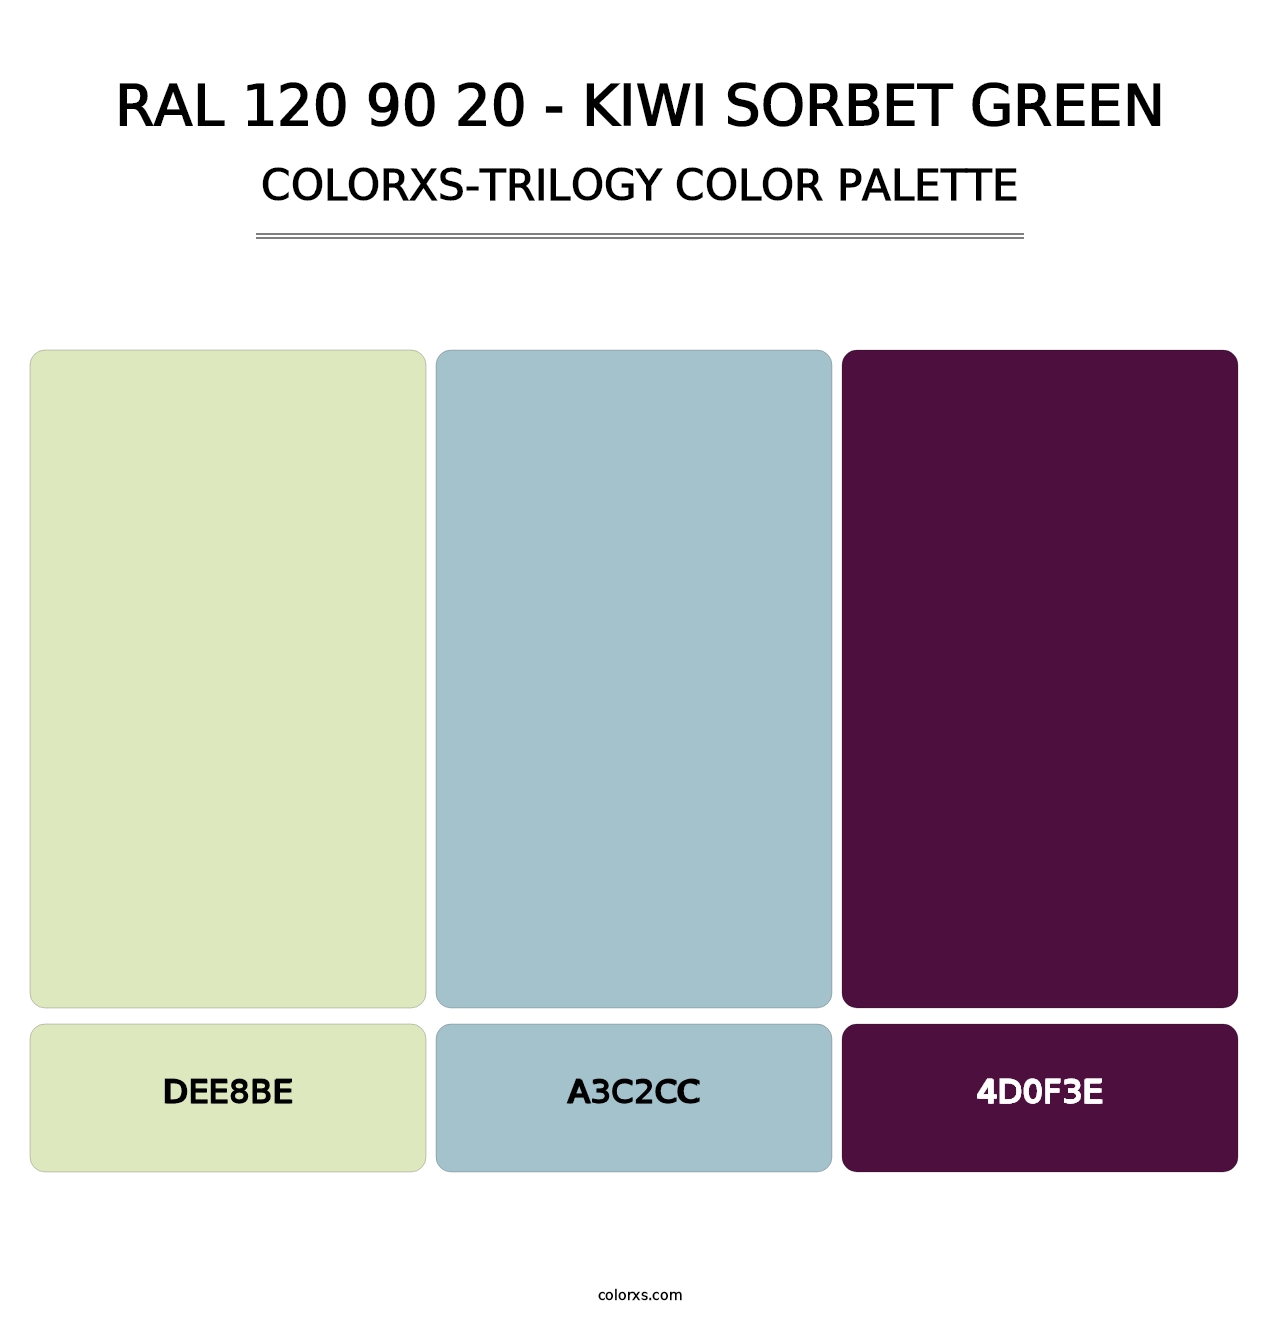 RAL 120 90 20 - Kiwi Sorbet Green - Colorxs Trilogy Palette